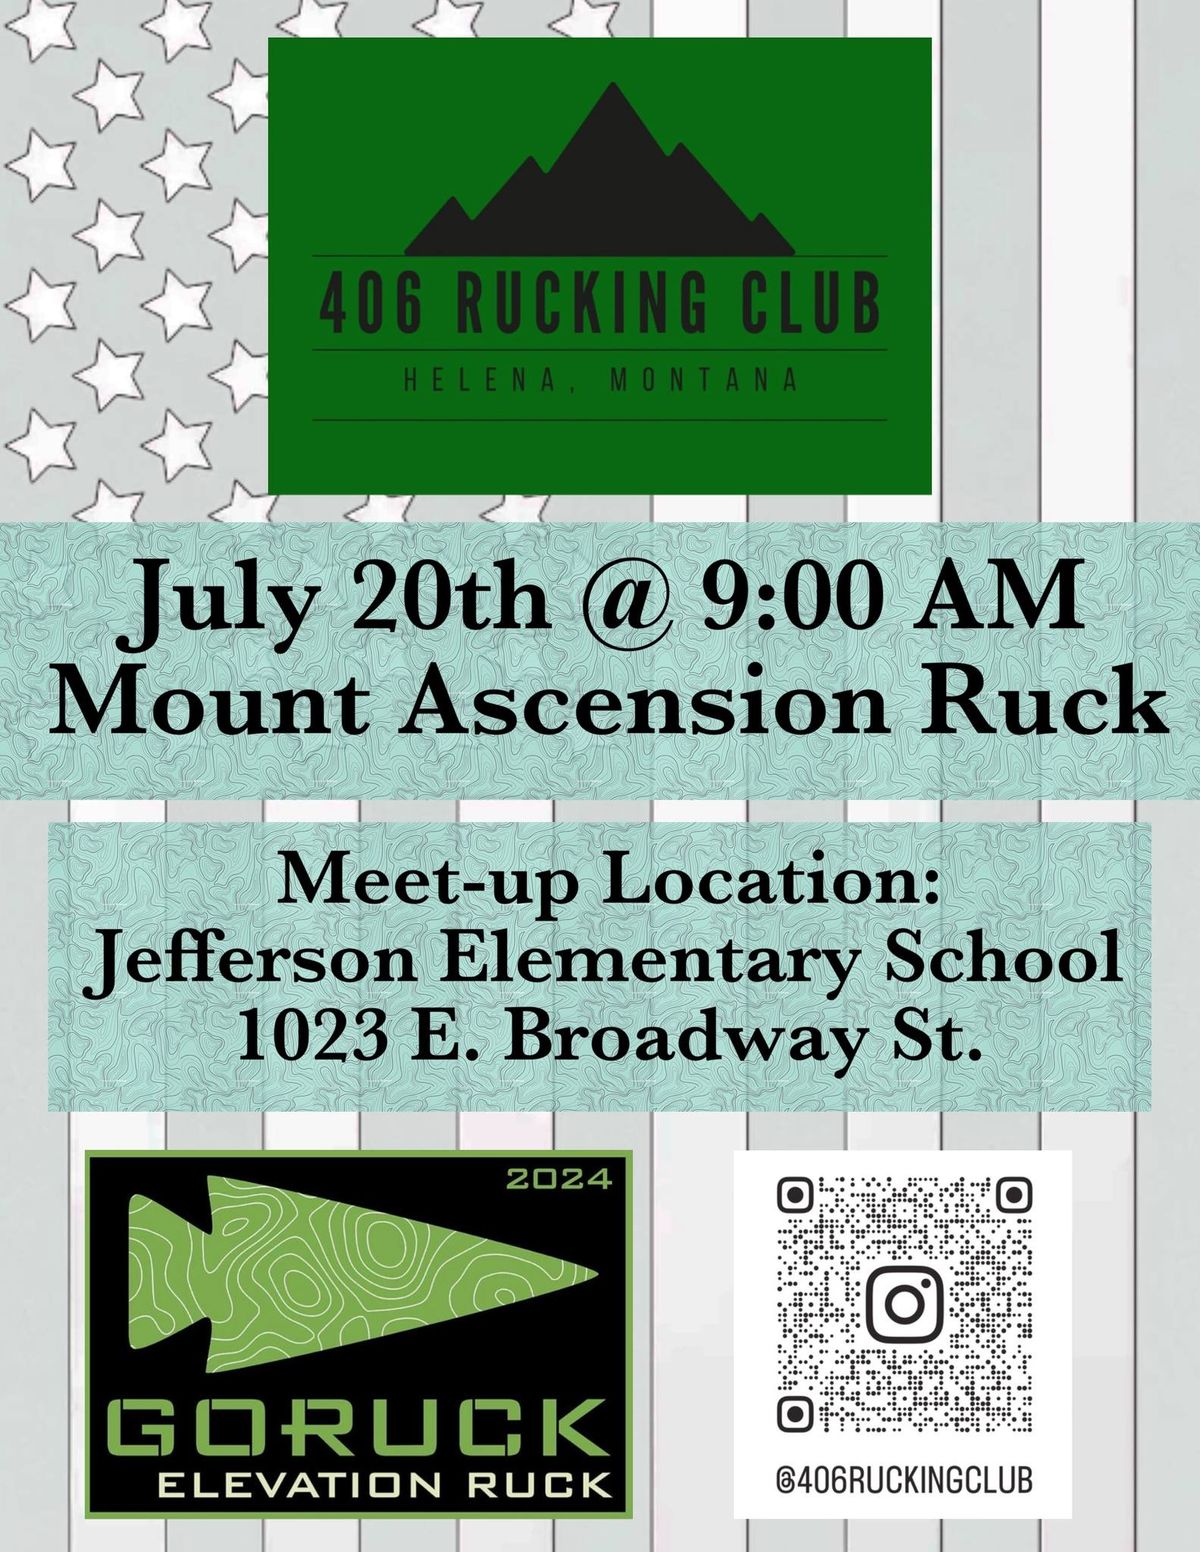 Mount Ascension Elevation Ruck